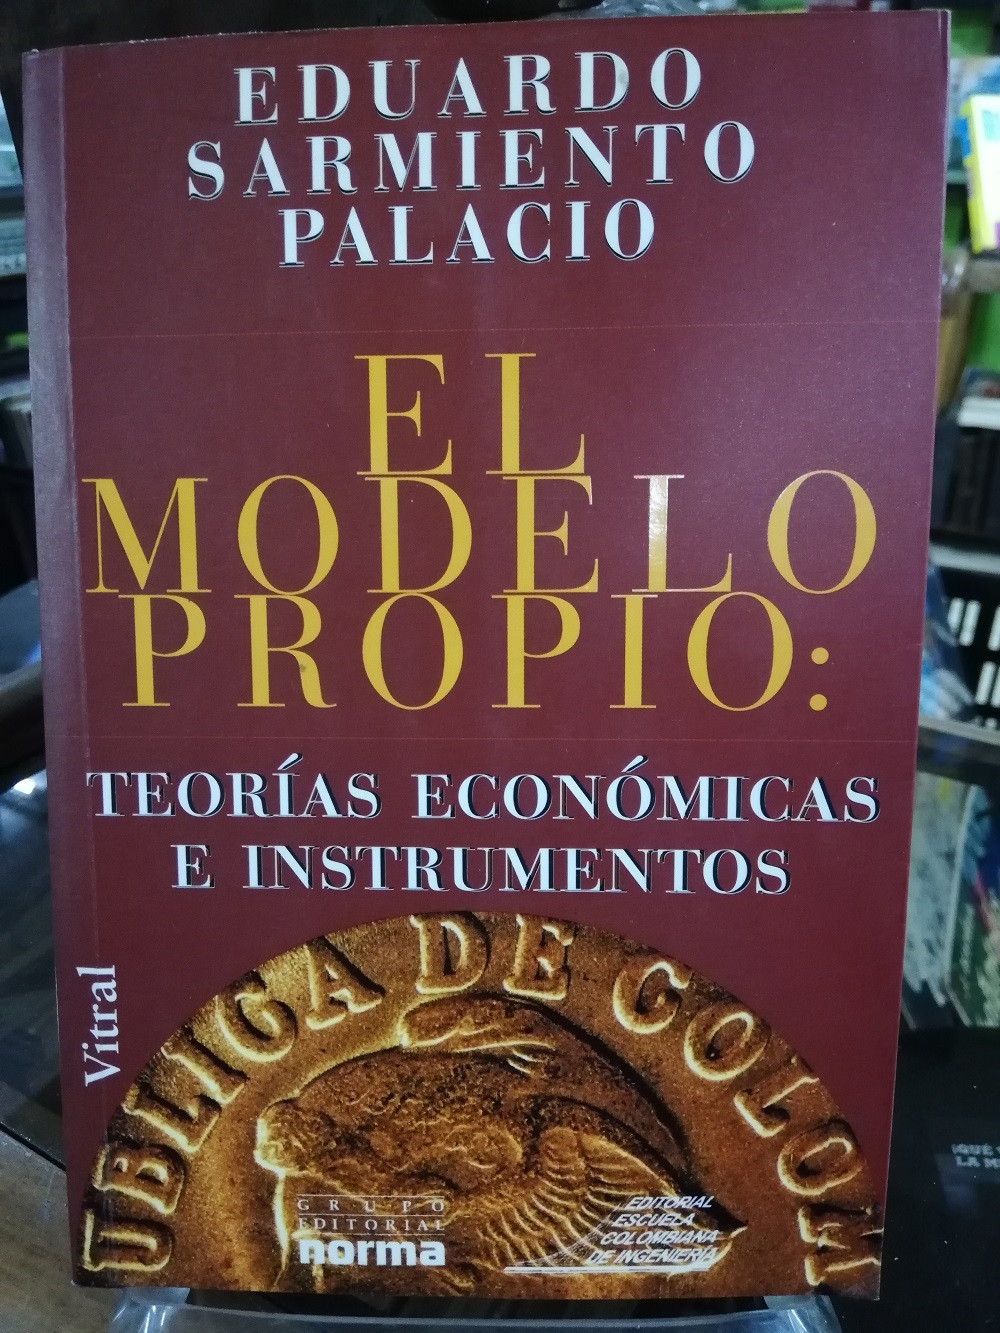 Imagen EL MODELO PROPIO: TEORIA ECONÓMICA E INSTRUMENTOS - EDUARDO SARMIENTO PALACIO 1